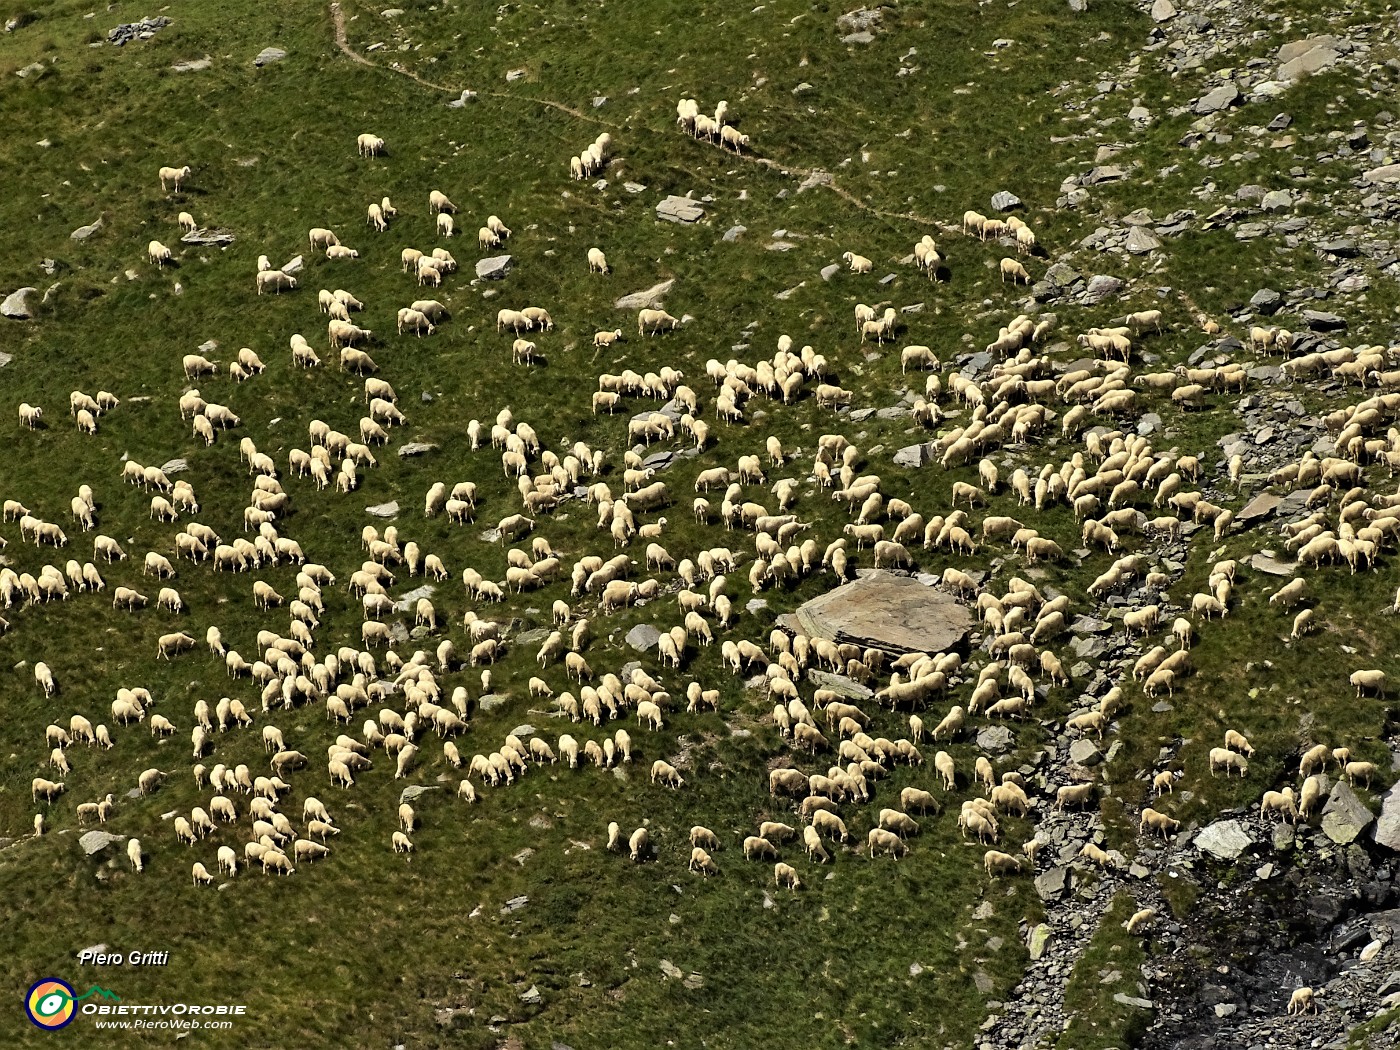 50 Un folto gregge di pecore al pascolo nella zona delle incisioni rupestri di Val Camisana - zoom.JPG